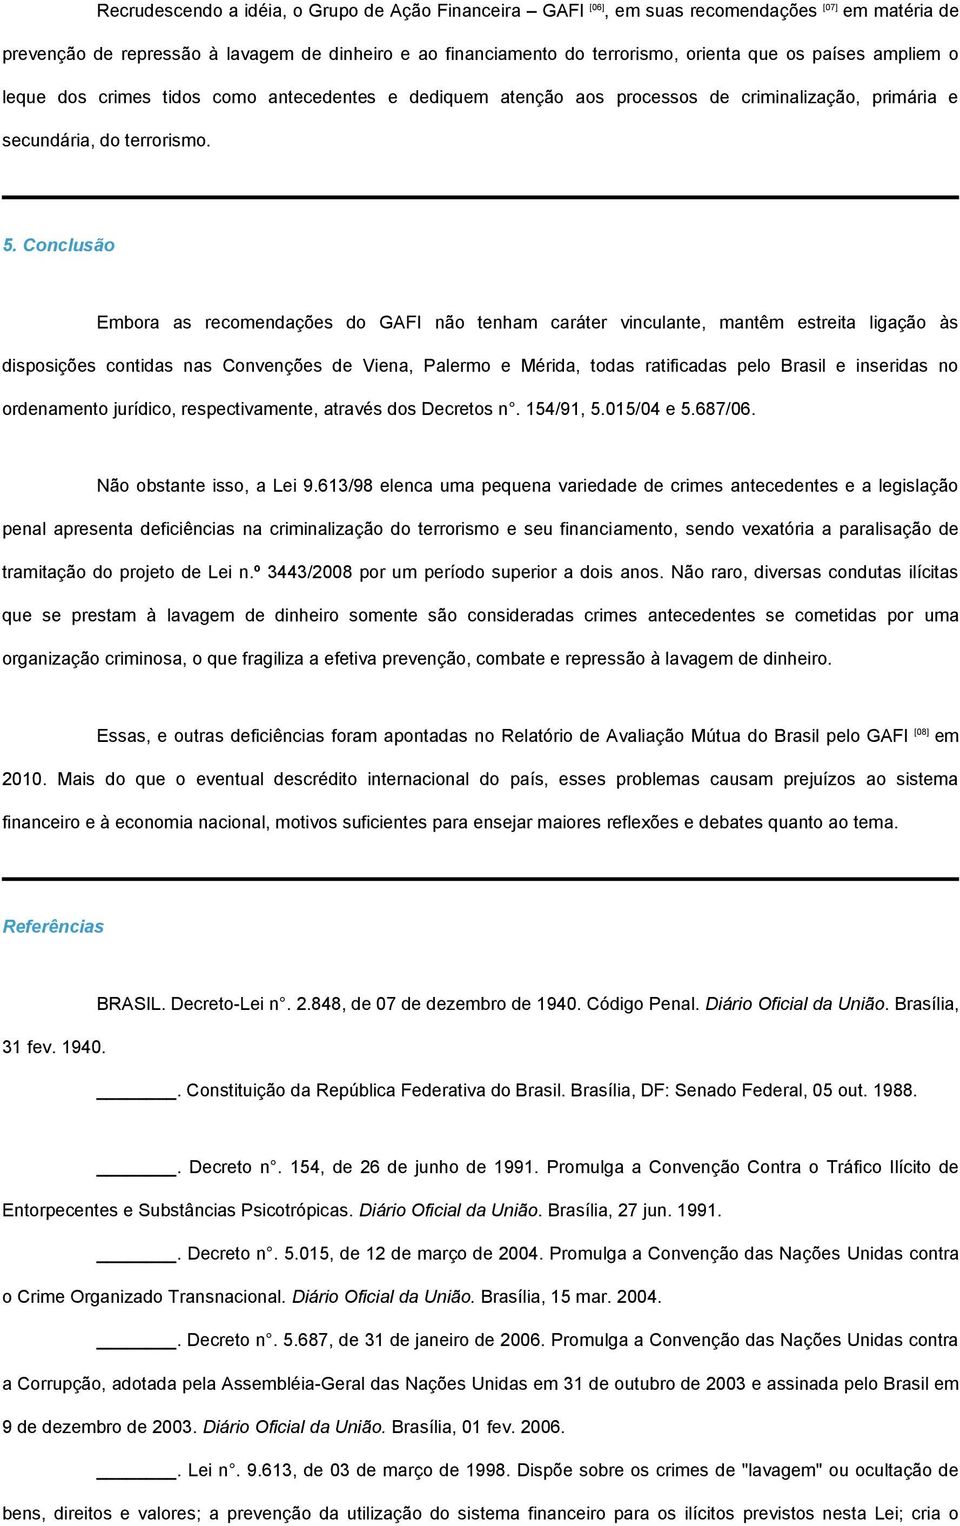 Conclusão Embora as recomendações do GAFI não tenham caráter vinculante, mantêm estreita ligação às disposições contidas nas Convenções de Viena, Palermo e Mérida, todas ratificadas pelo Brasil e